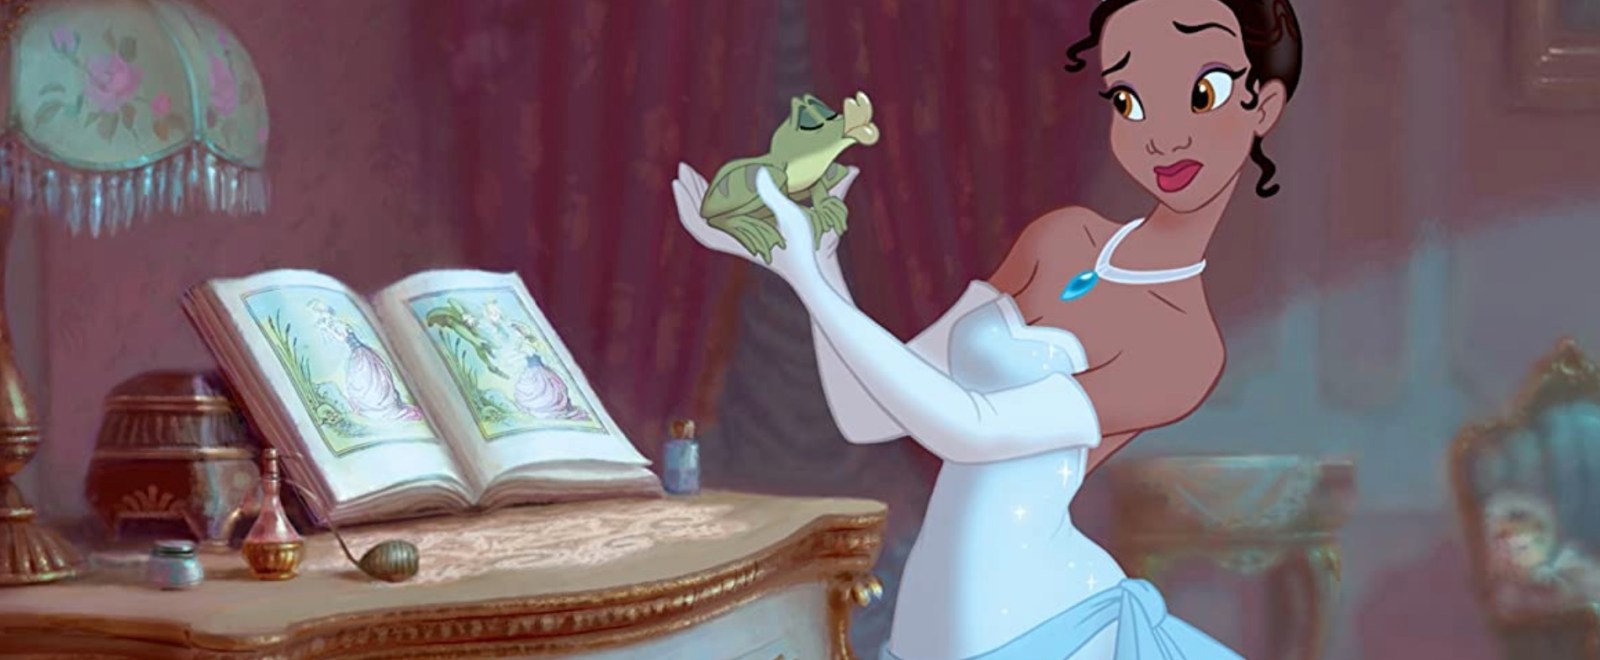 princess-and-the-frog.jpg